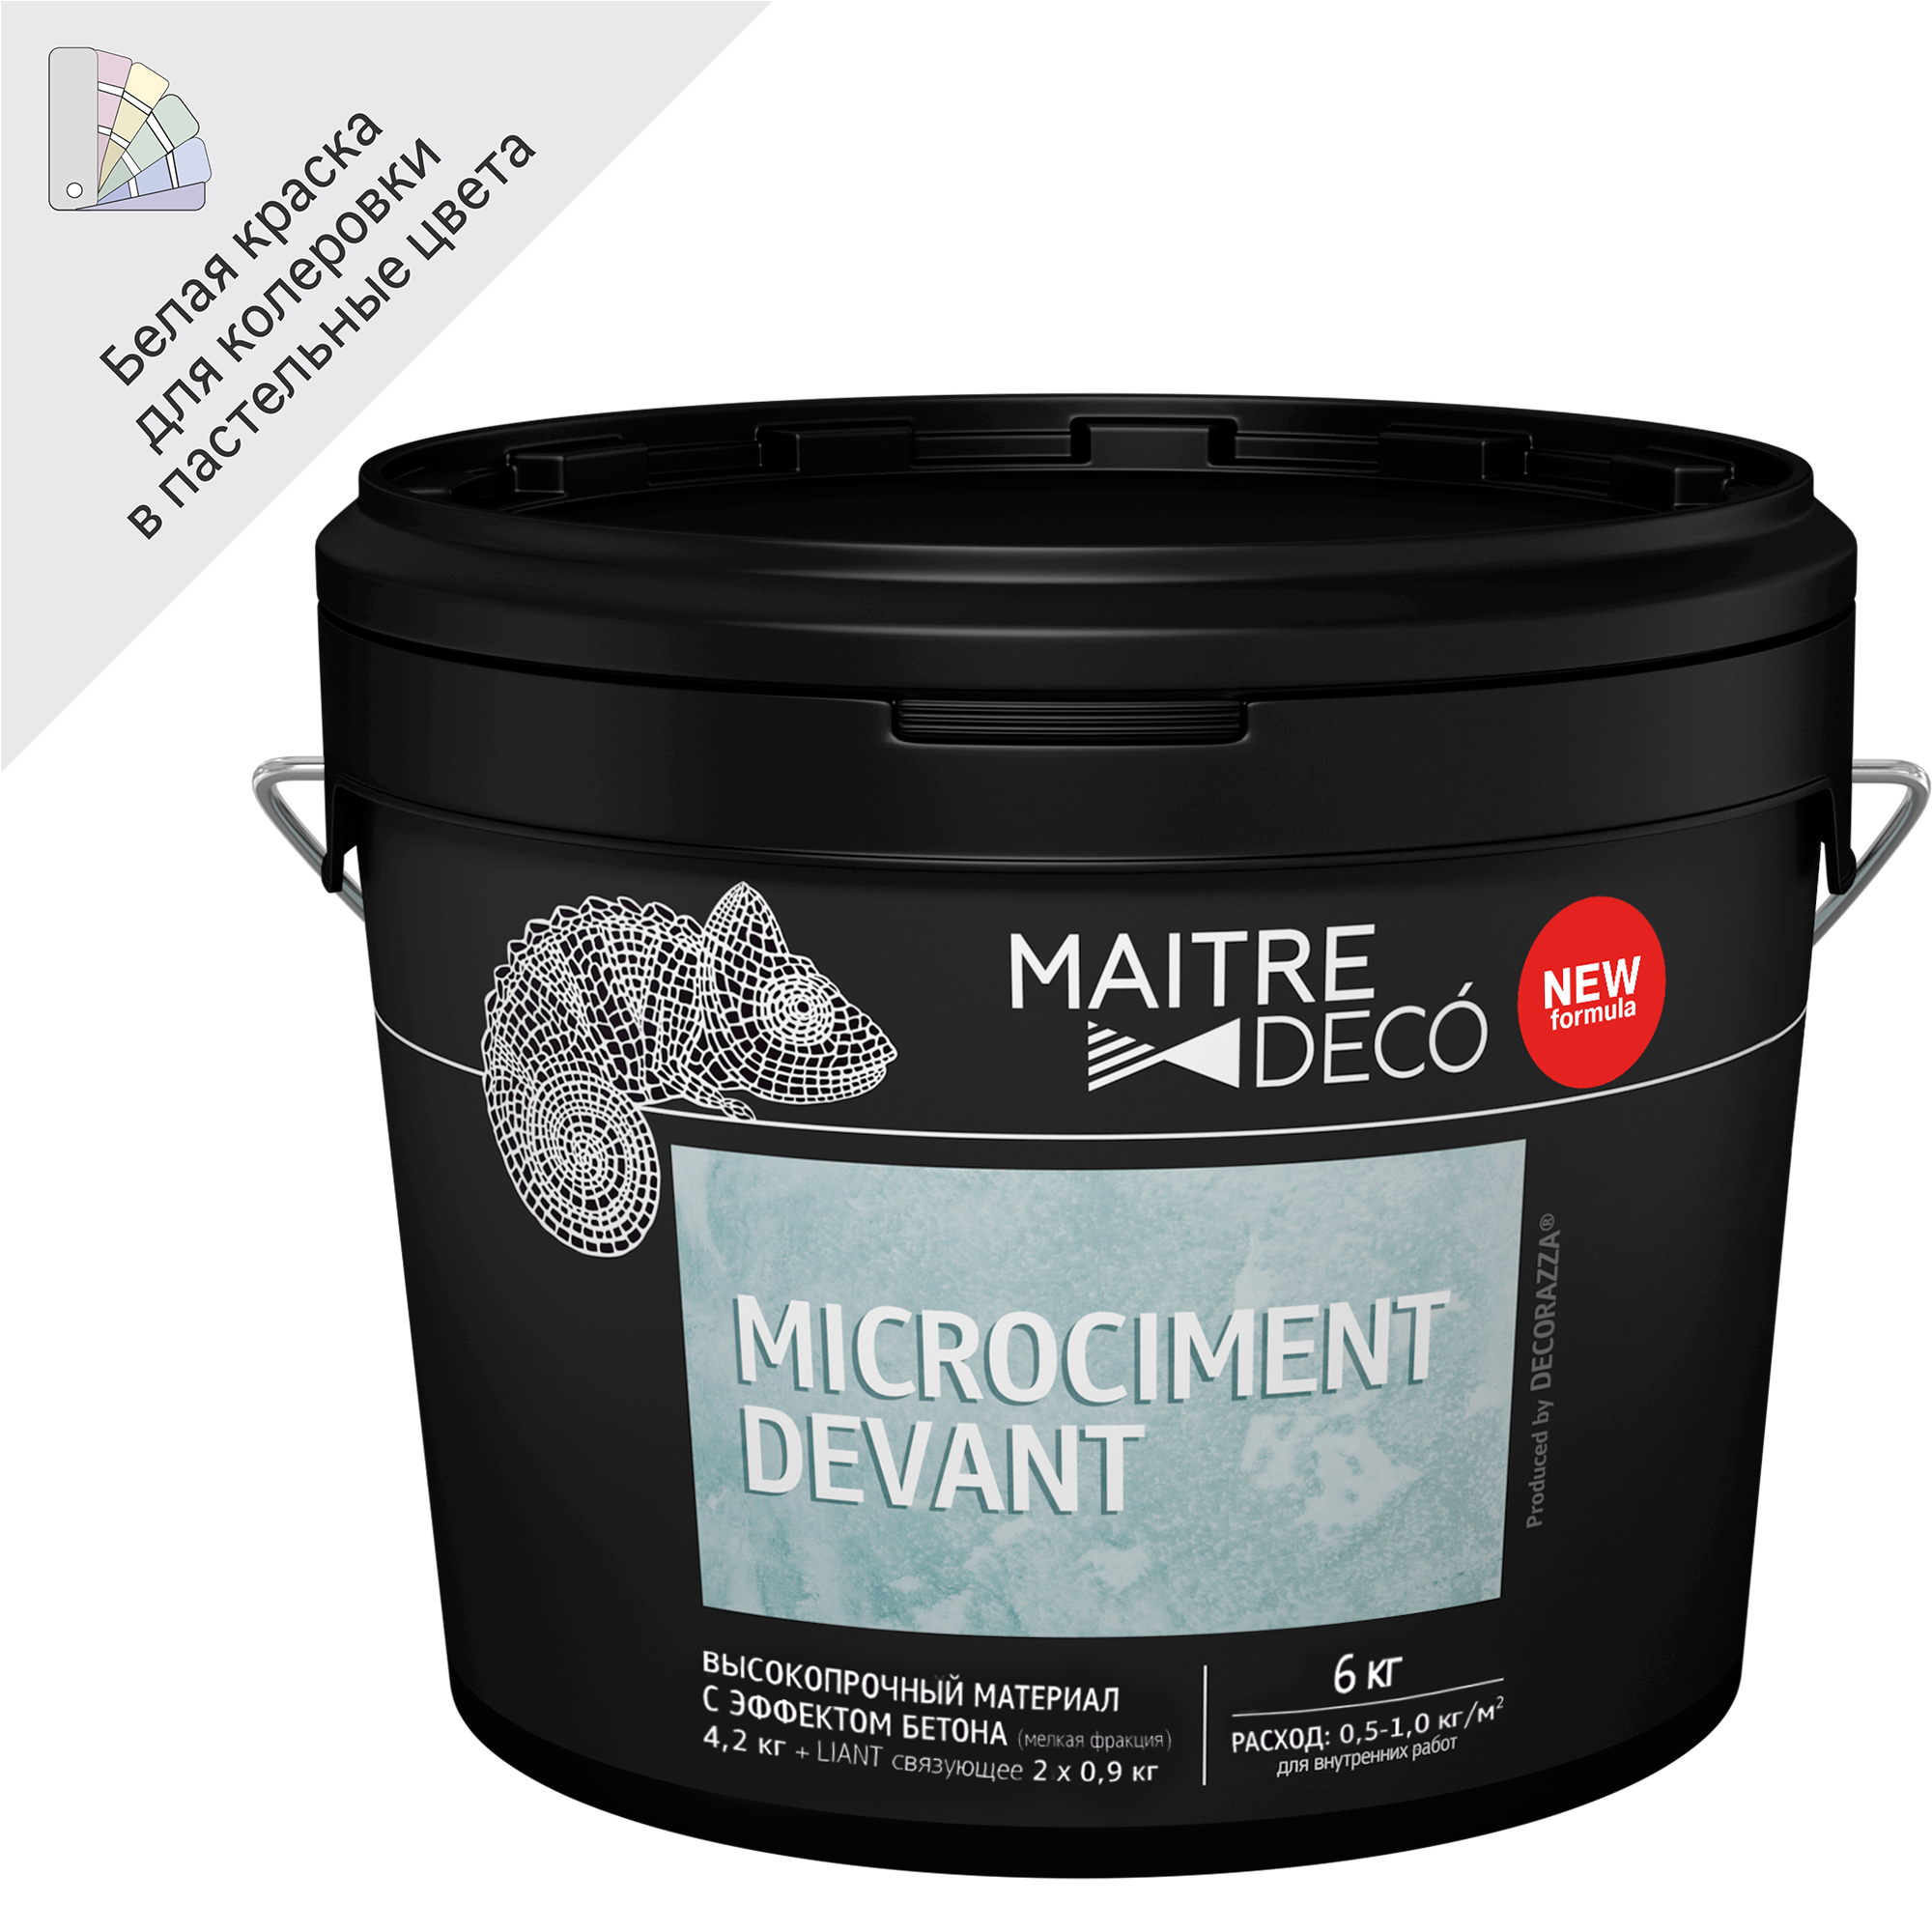 82891102 Высокопрочный материал с эффектом бетона «Microciment Devant» 6 кг STLM-0037593 MAITRE DECO